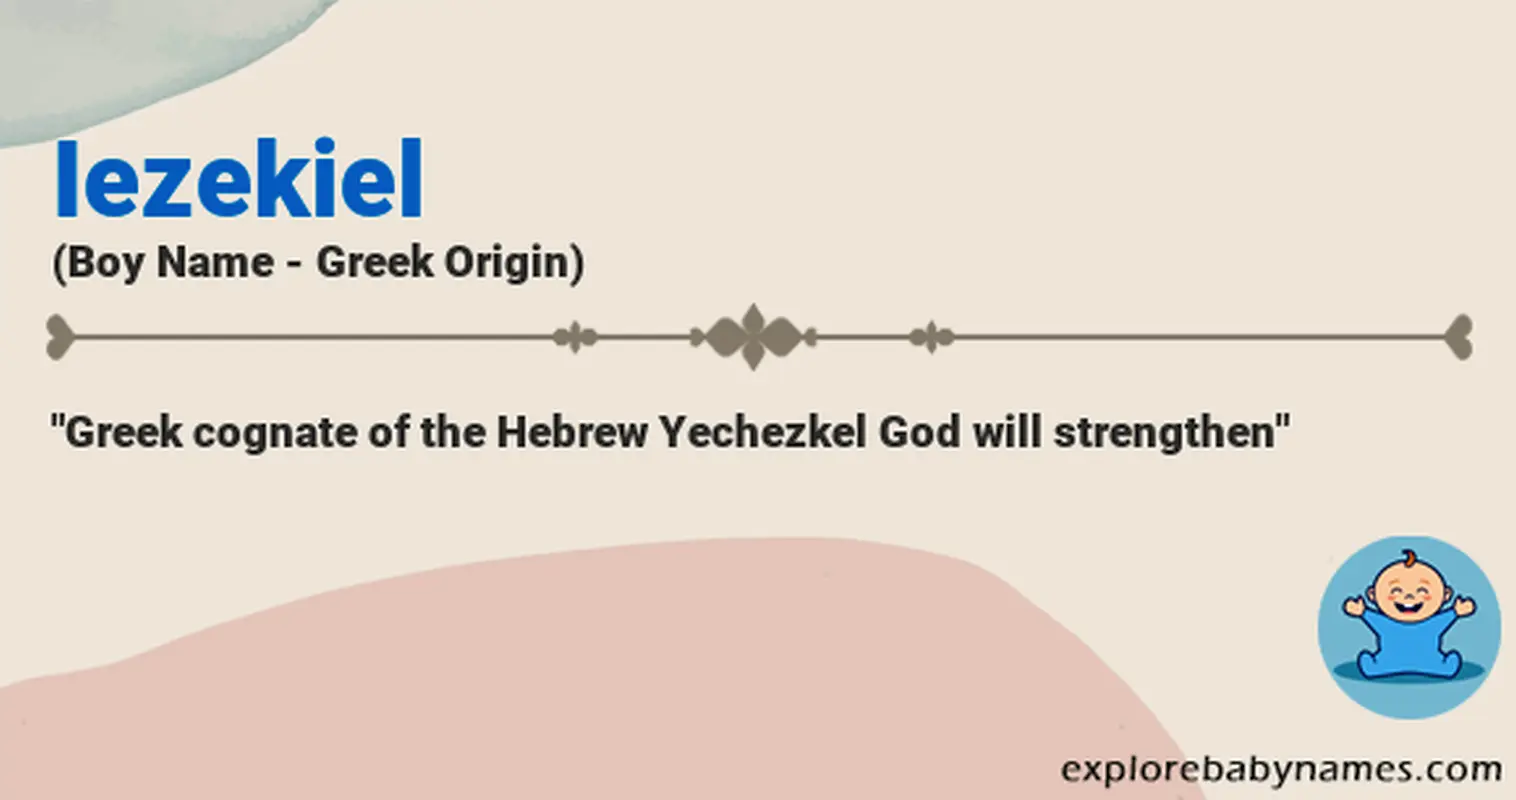 Meaning of Iezekiel